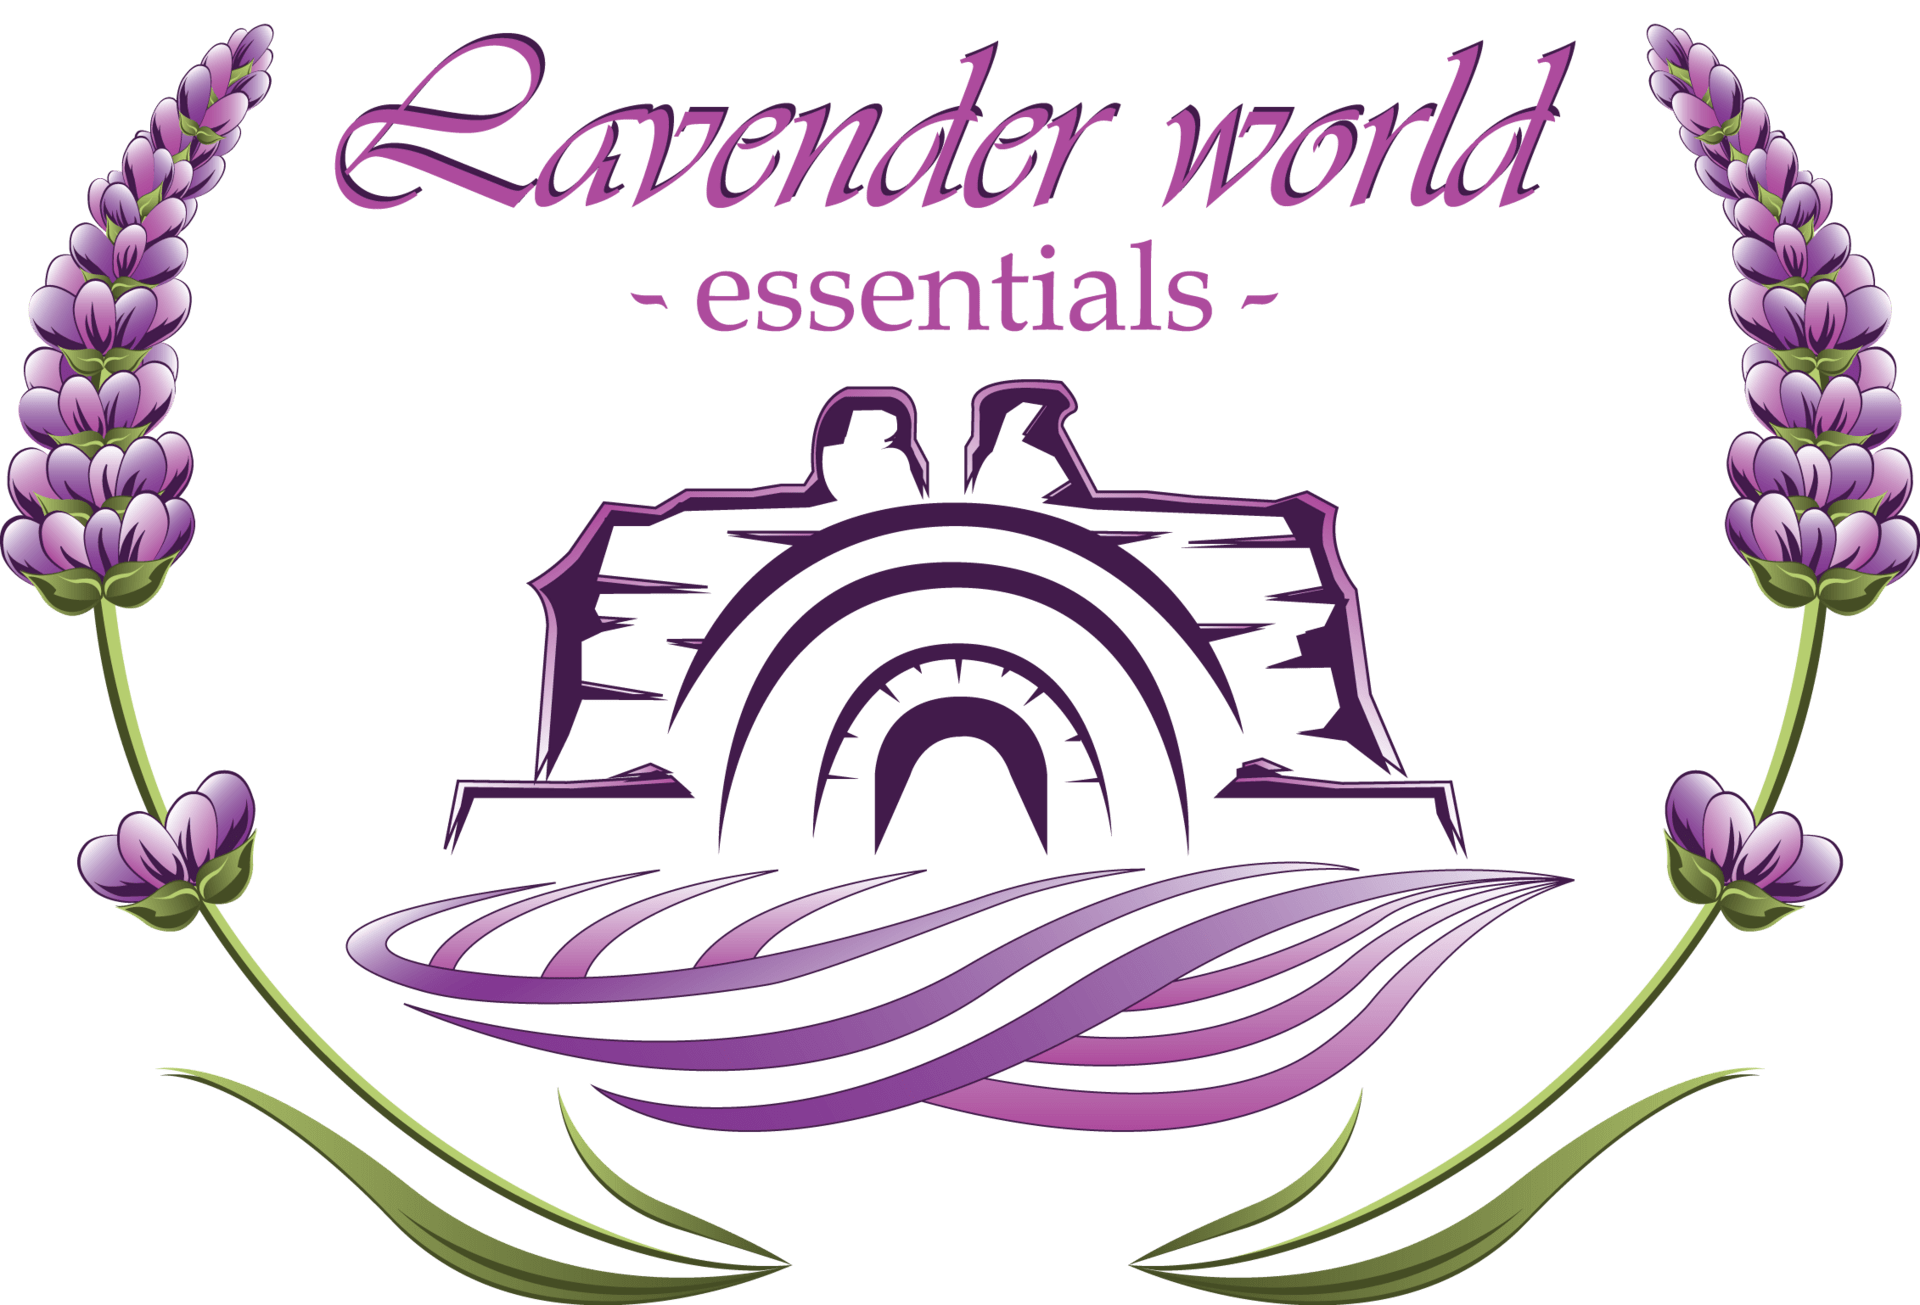 lavenderworldhissar